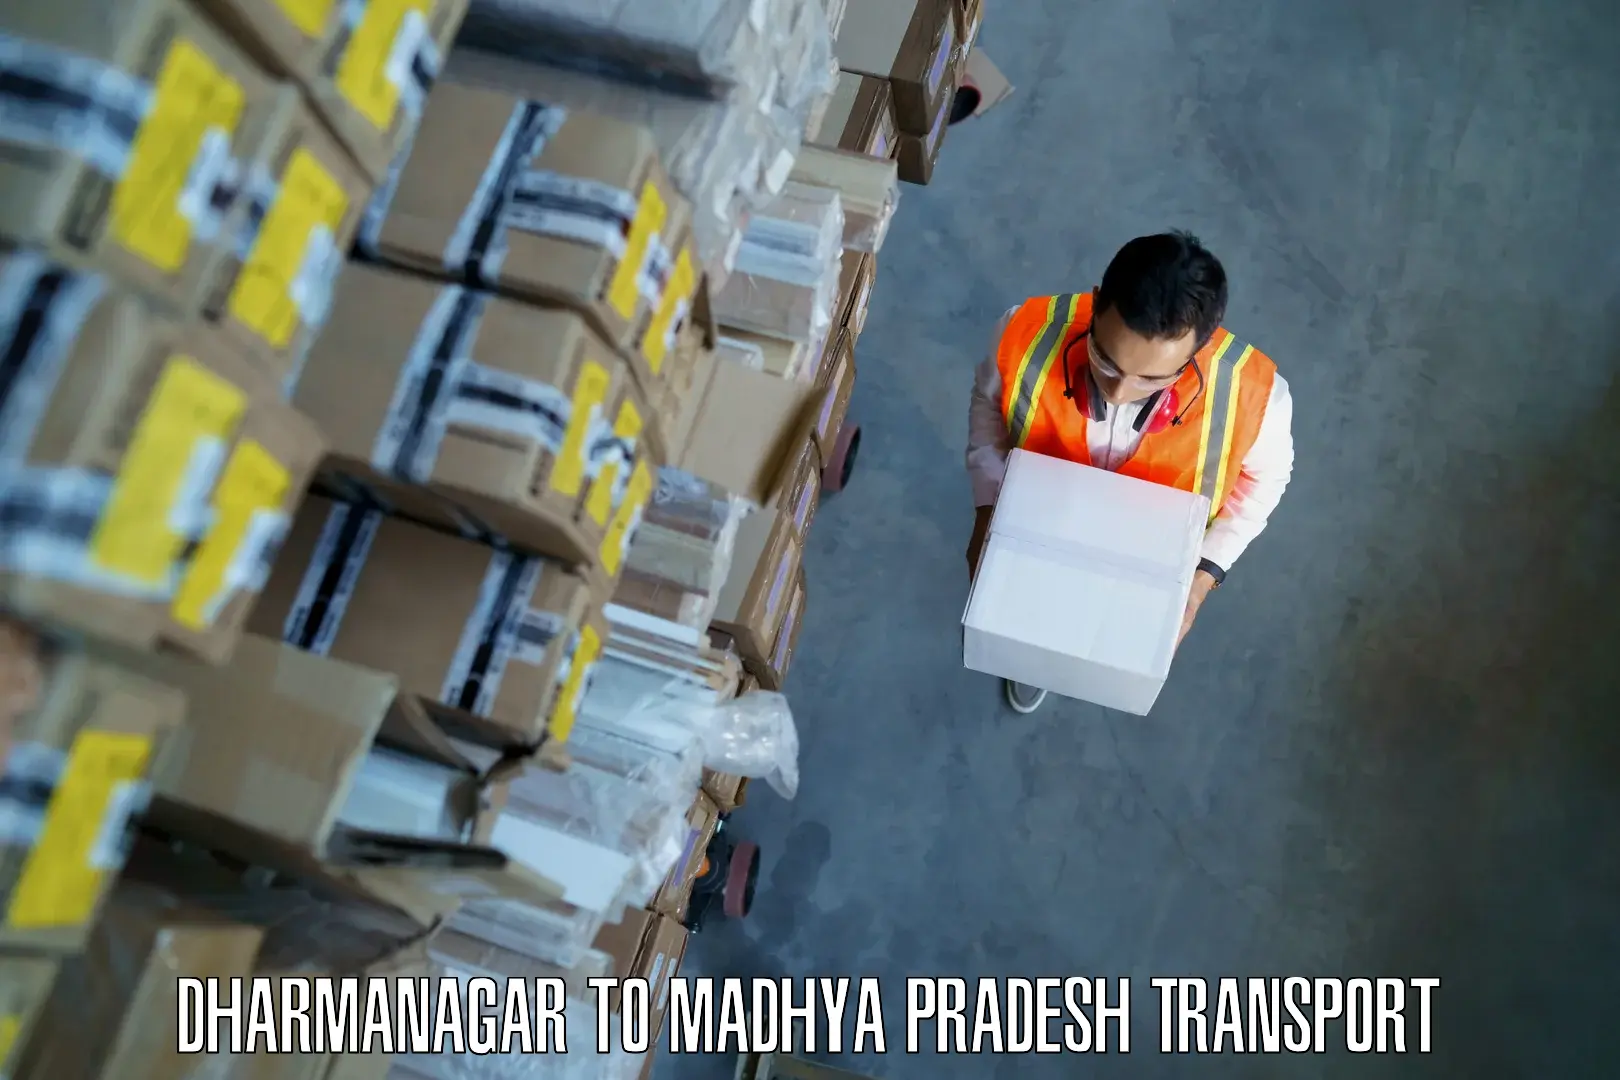 Shipping partner Dharmanagar to Ranchha